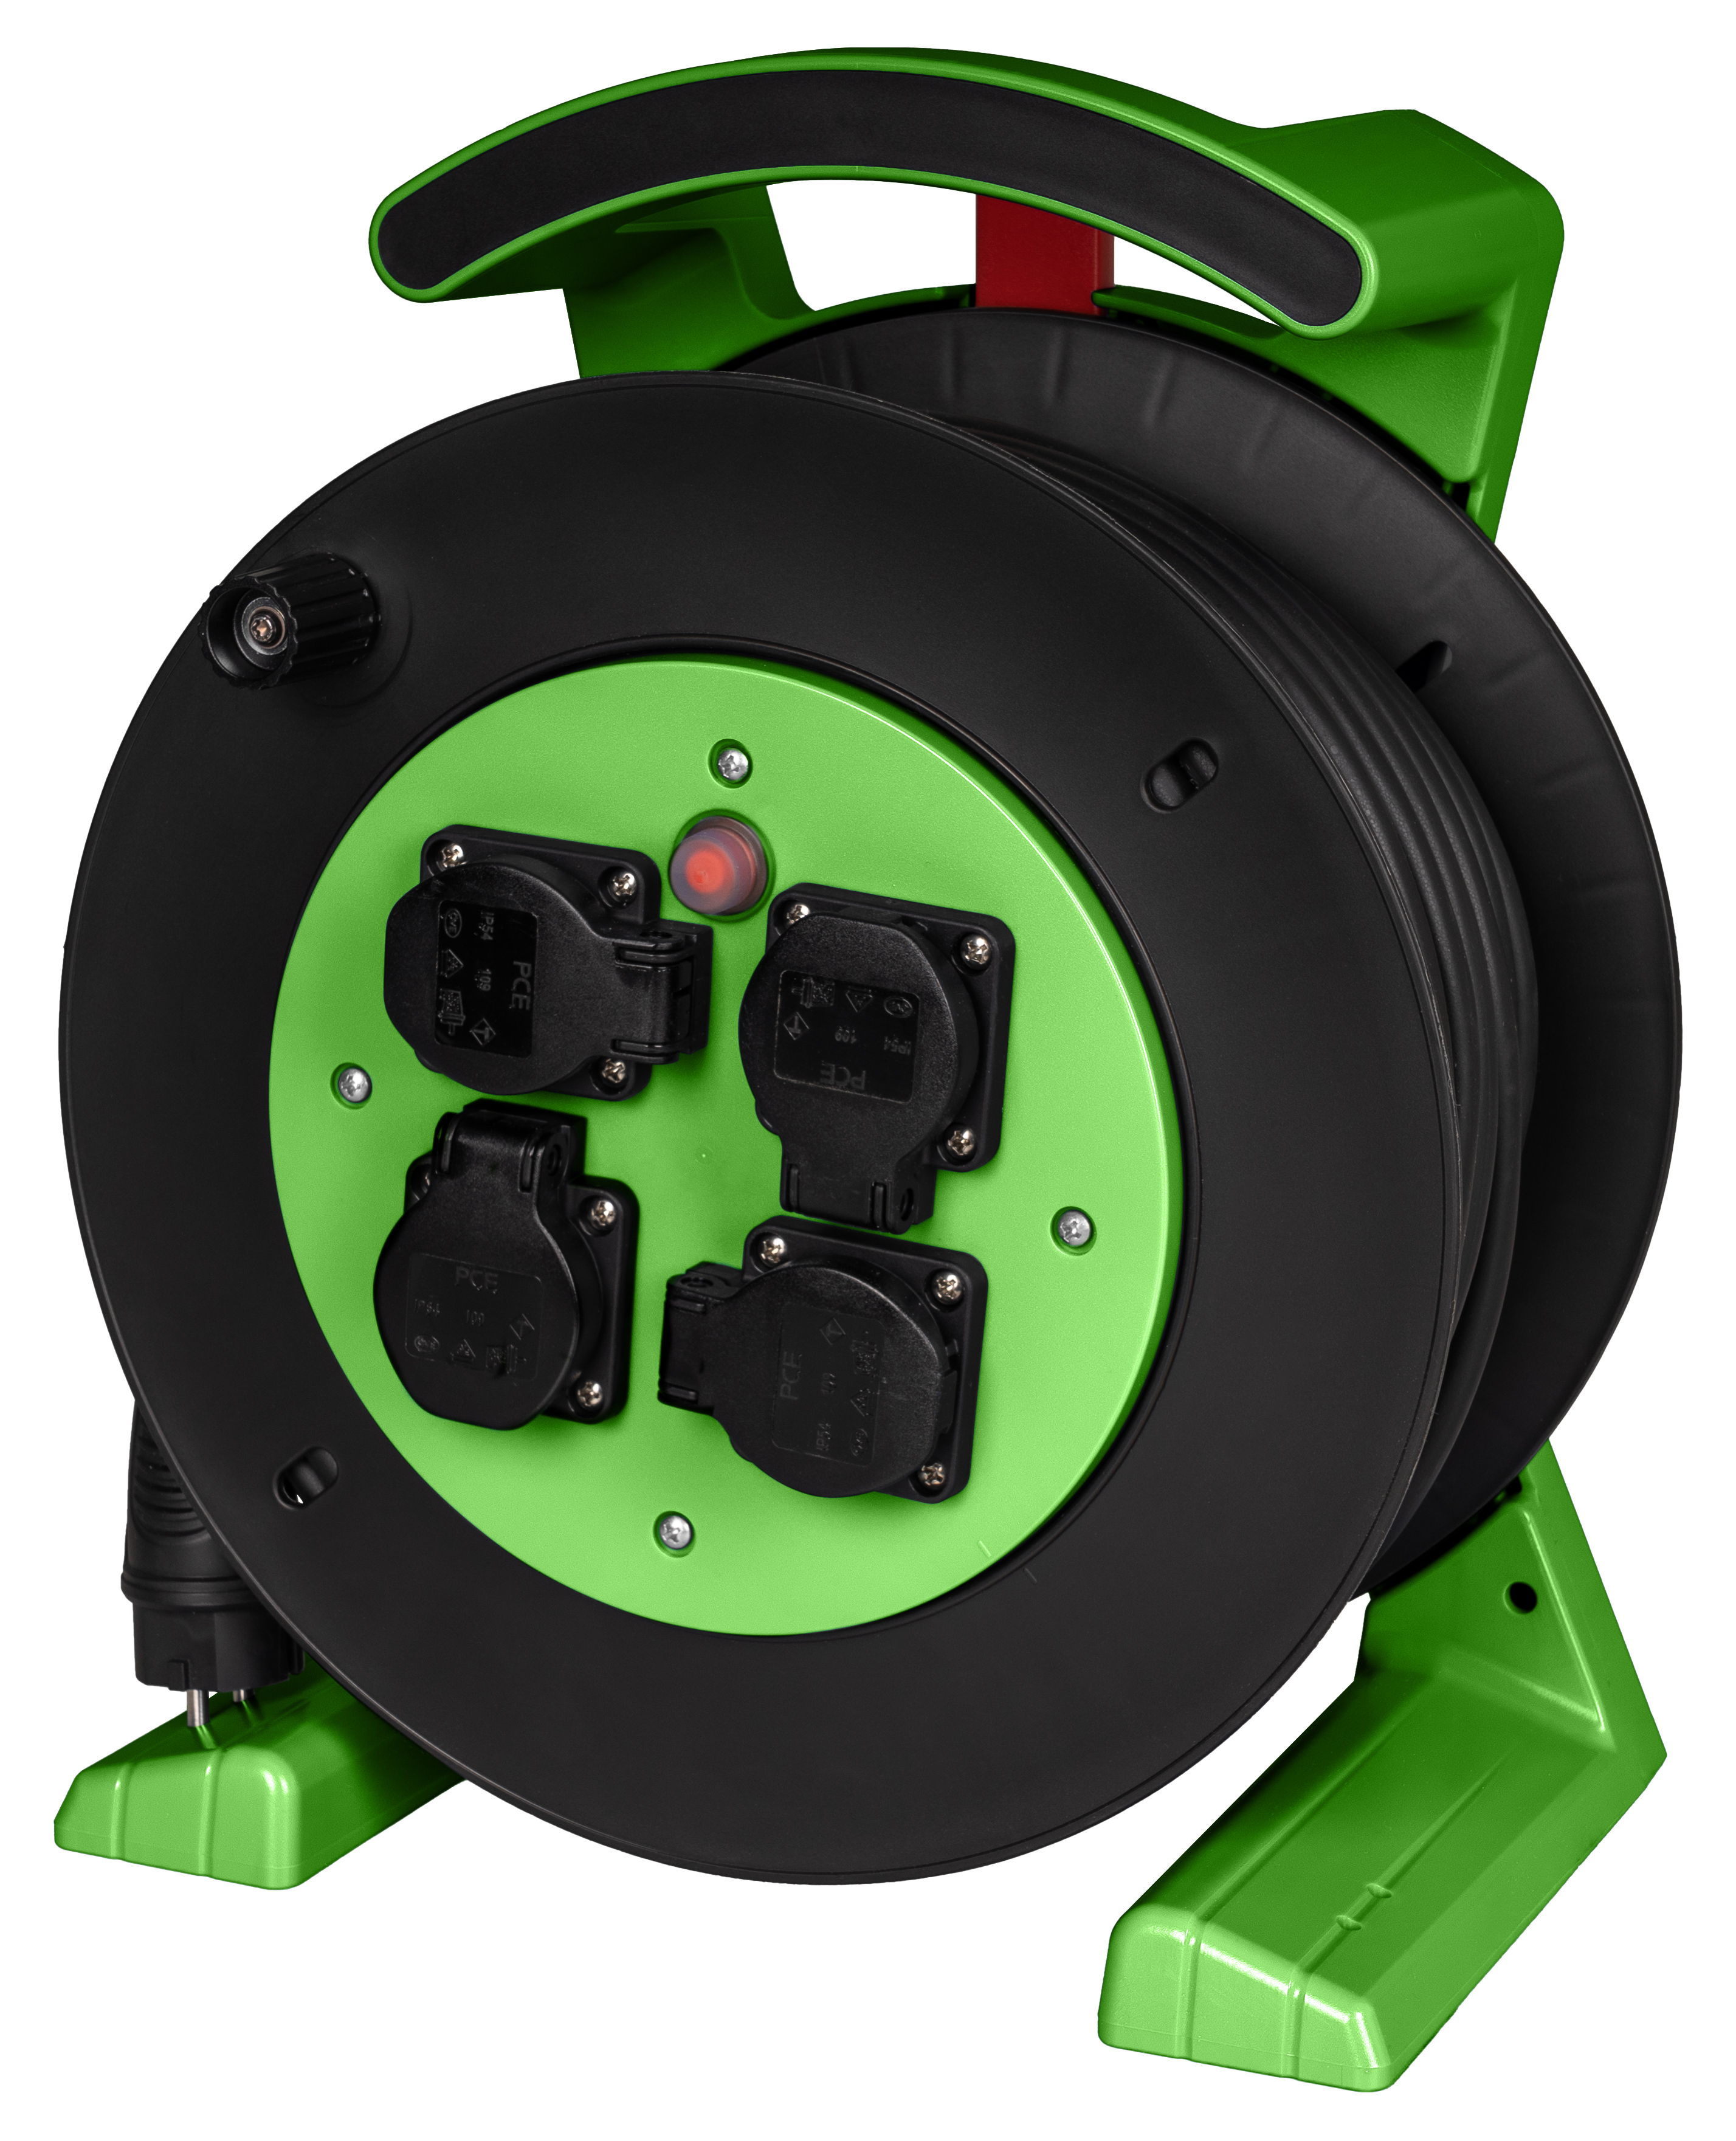 Kabeltrommel grün-schwarz, 4 x Schutzkontakt-Steckdose, H07RN-F 3 G 1,5 mm², 40 m JUMBO L 2.0